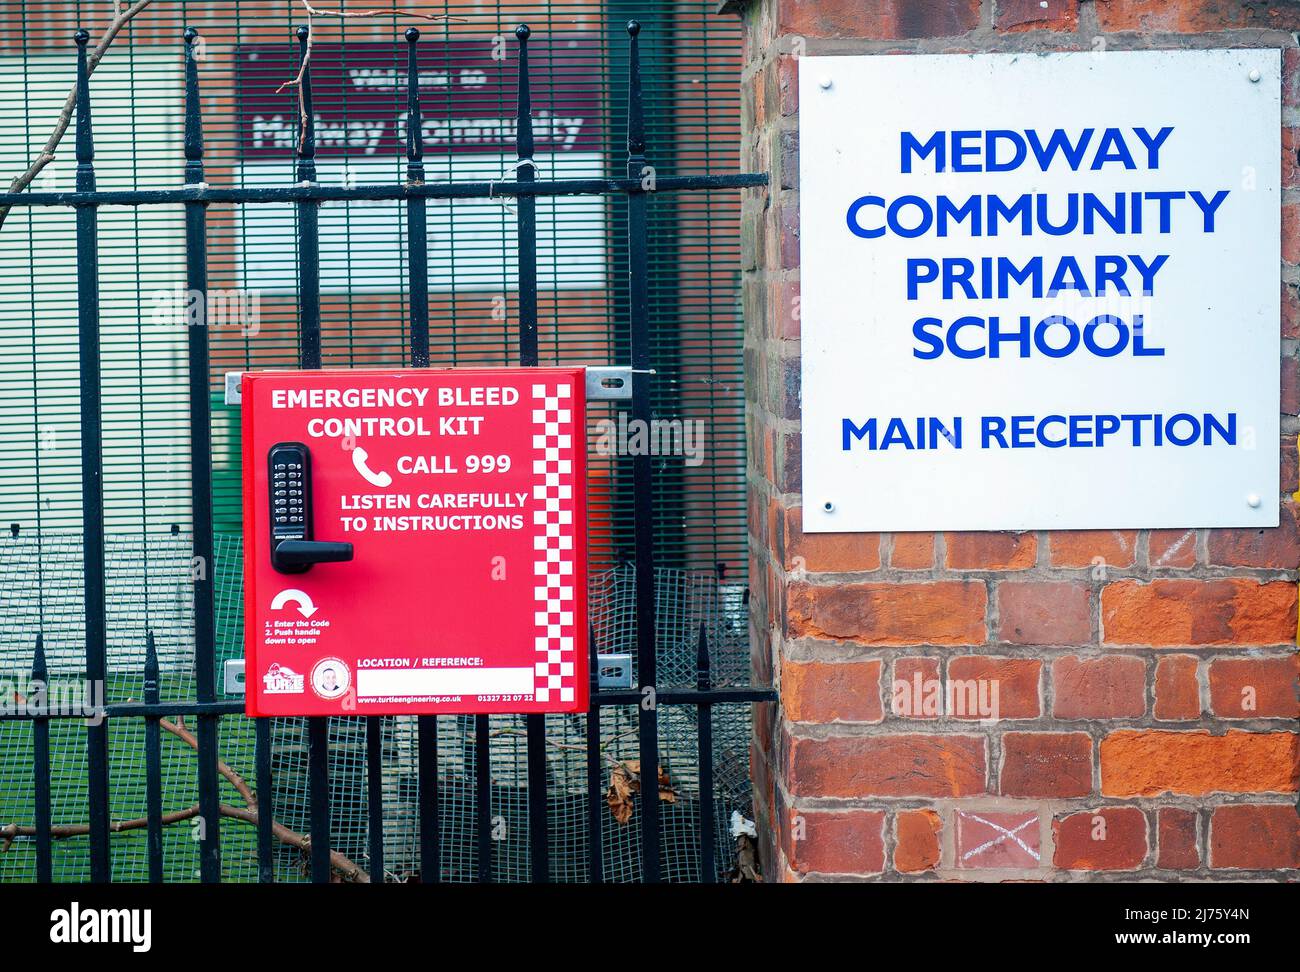 Kits de contrôle de purge d'urgence installés dans huit villes. École primaire communautaire Medway, Highfields. Les boîtes d'urgence contiennent des gants de protection, de la gaze et des pansements pour arrêter les saignements et exercer une pression sur les plaies. Banque D'Images